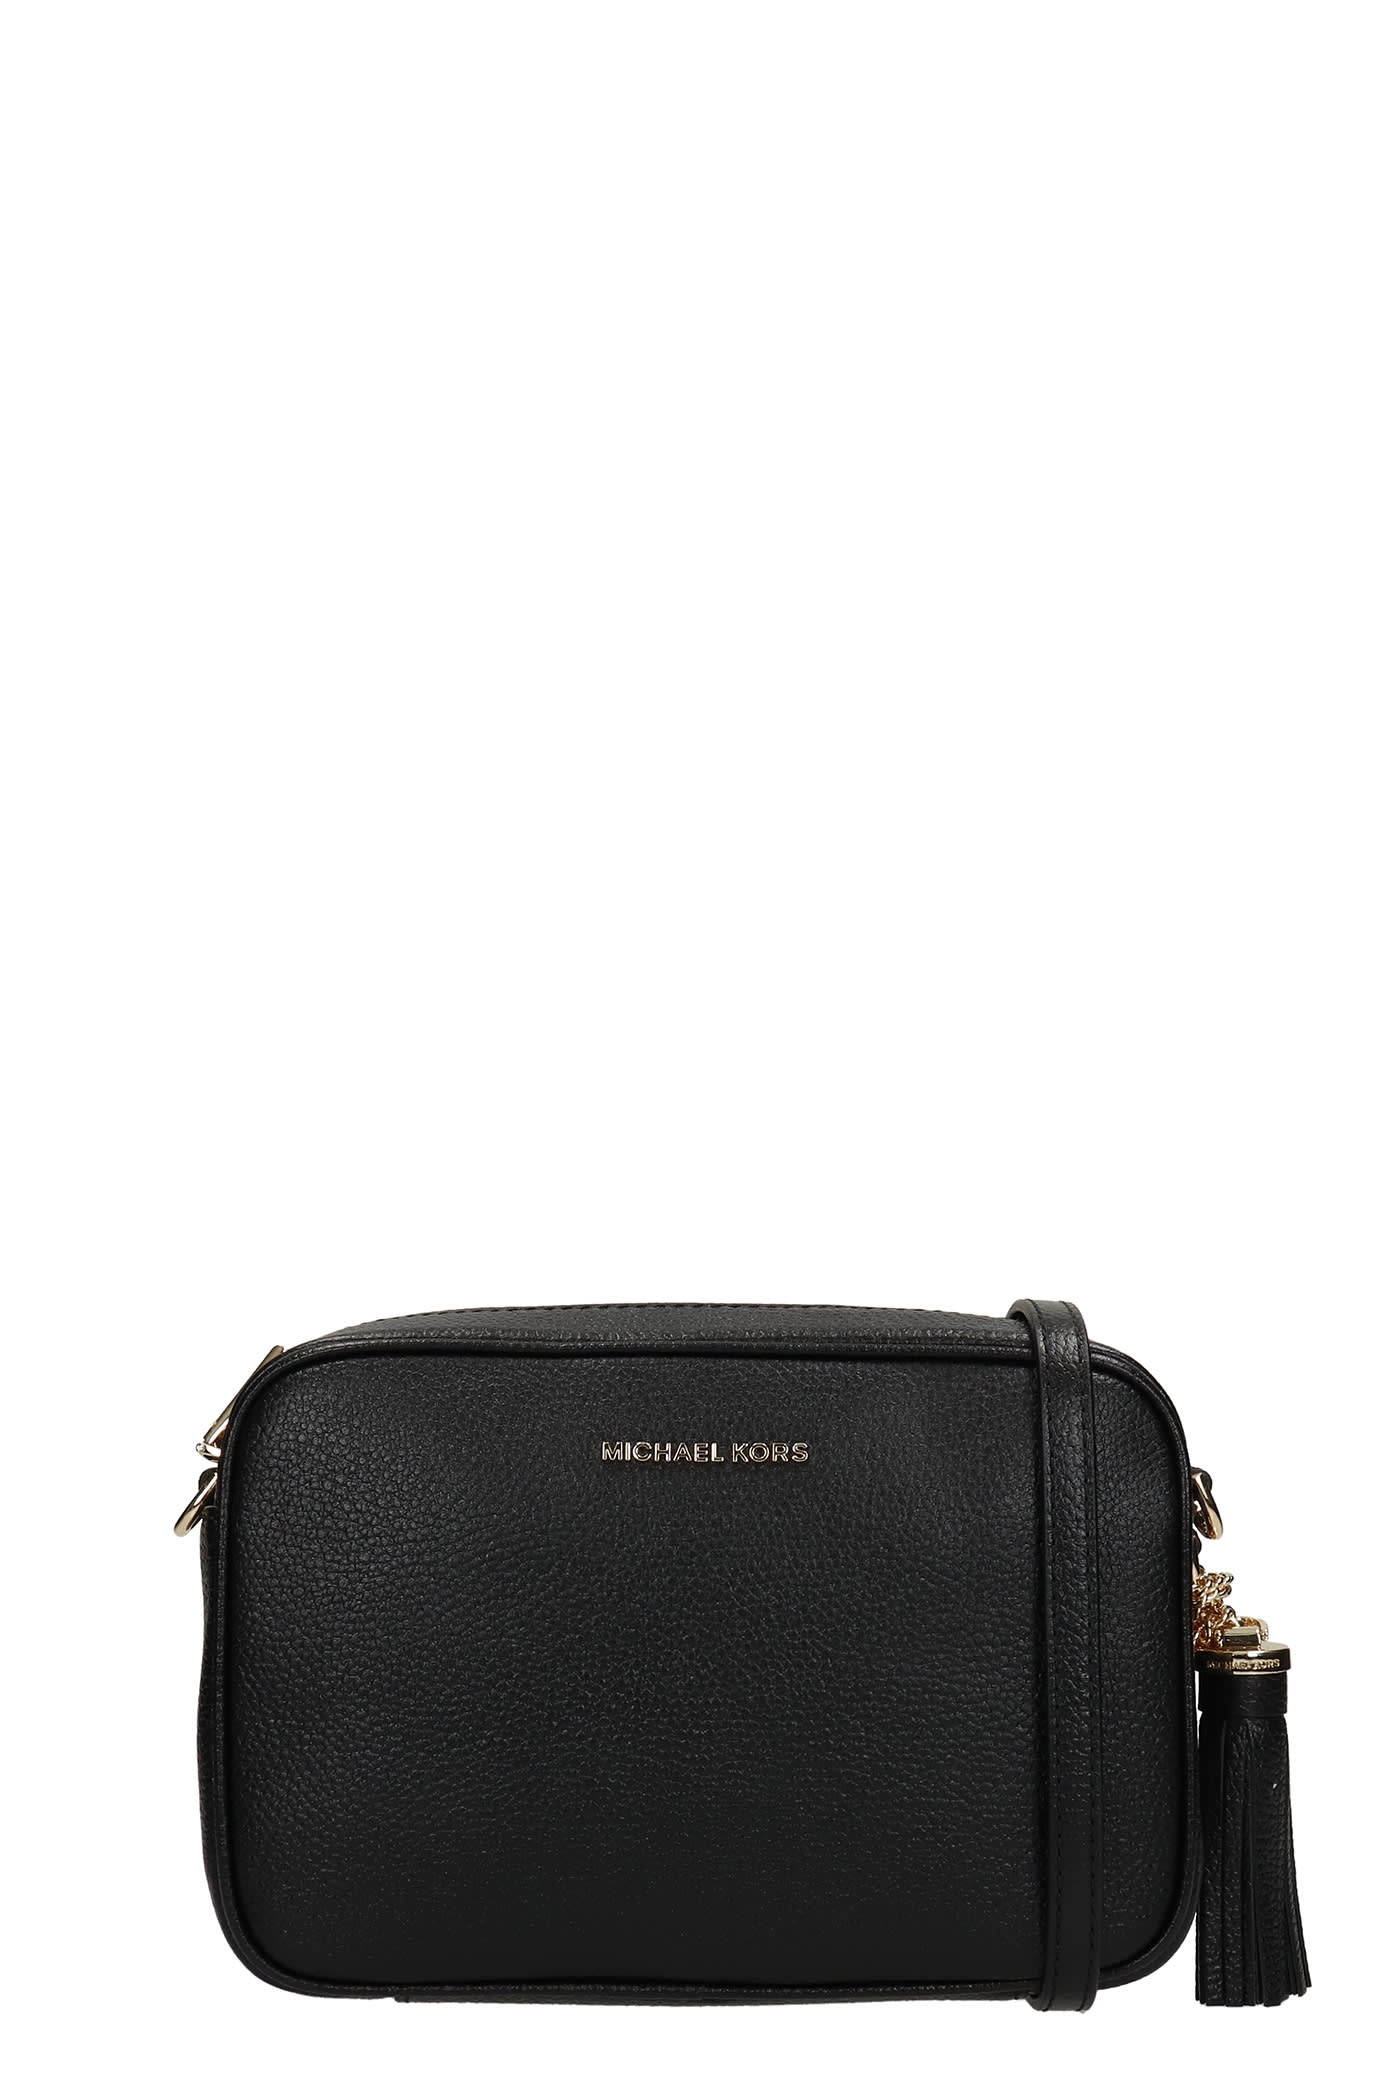 Michael Kors Ginny Shoulder Bag In Black Leather